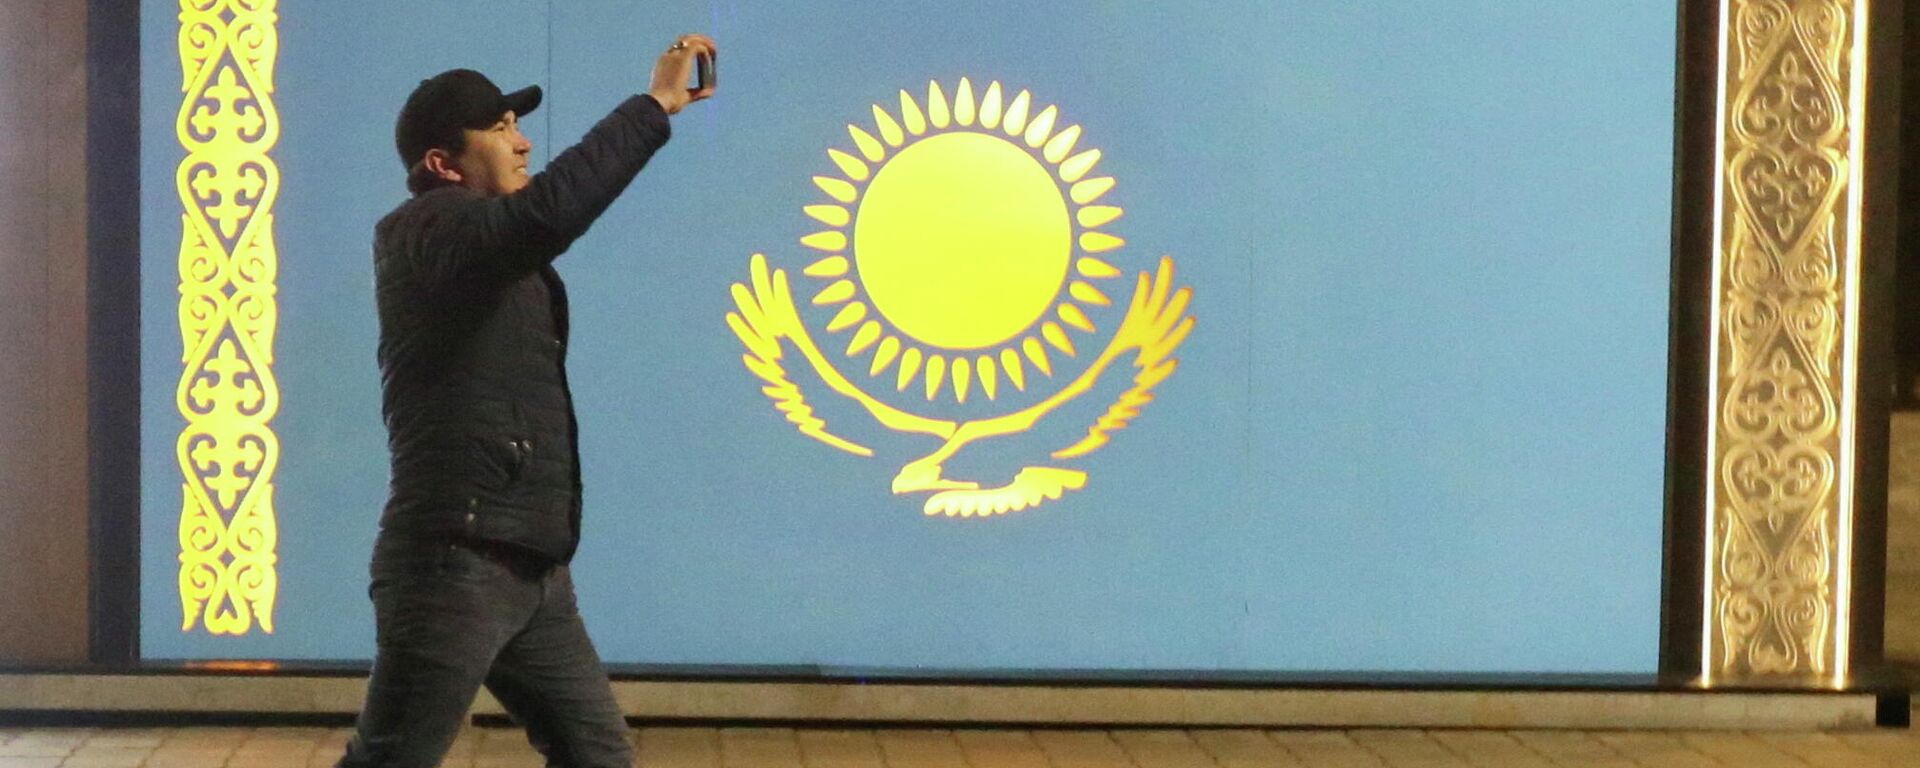 Мужчина проходит мимо флага Казахстана во время акции протеста против повышения цен сжиженного газа в Алматы, Казахстан. 5 января 2022 года - Sputnik Кыргызстан, 1920, 10.01.2022